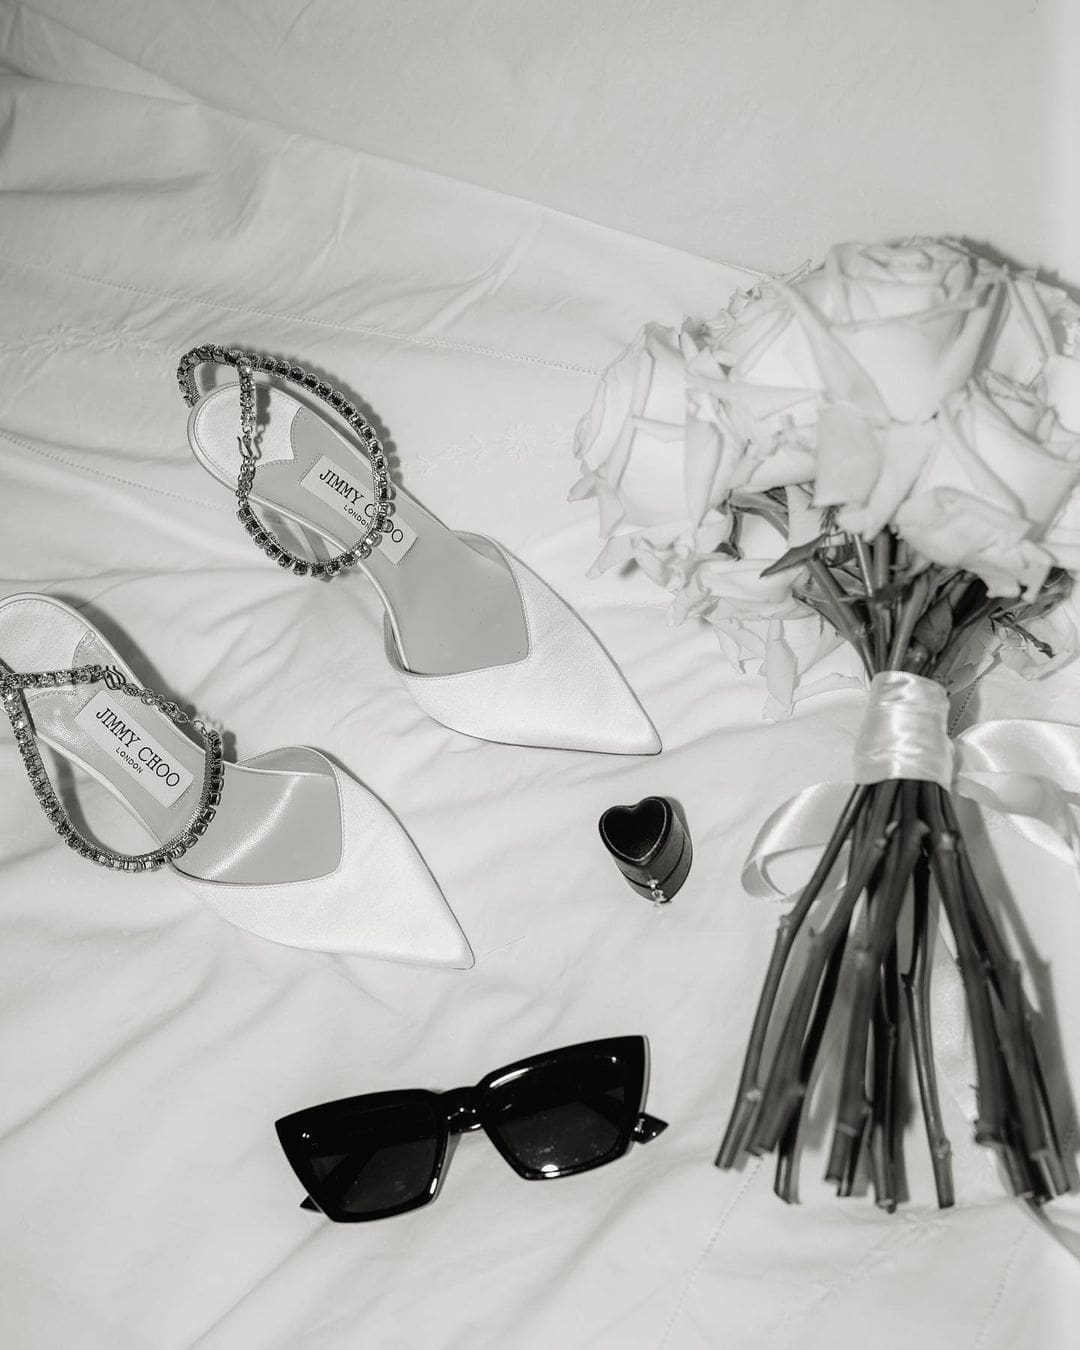 Zapatos de novia blancos, gafas de sol estilizadas y un frasco de perfume elegante dispuestos sobre una cama con sábanas blancas.